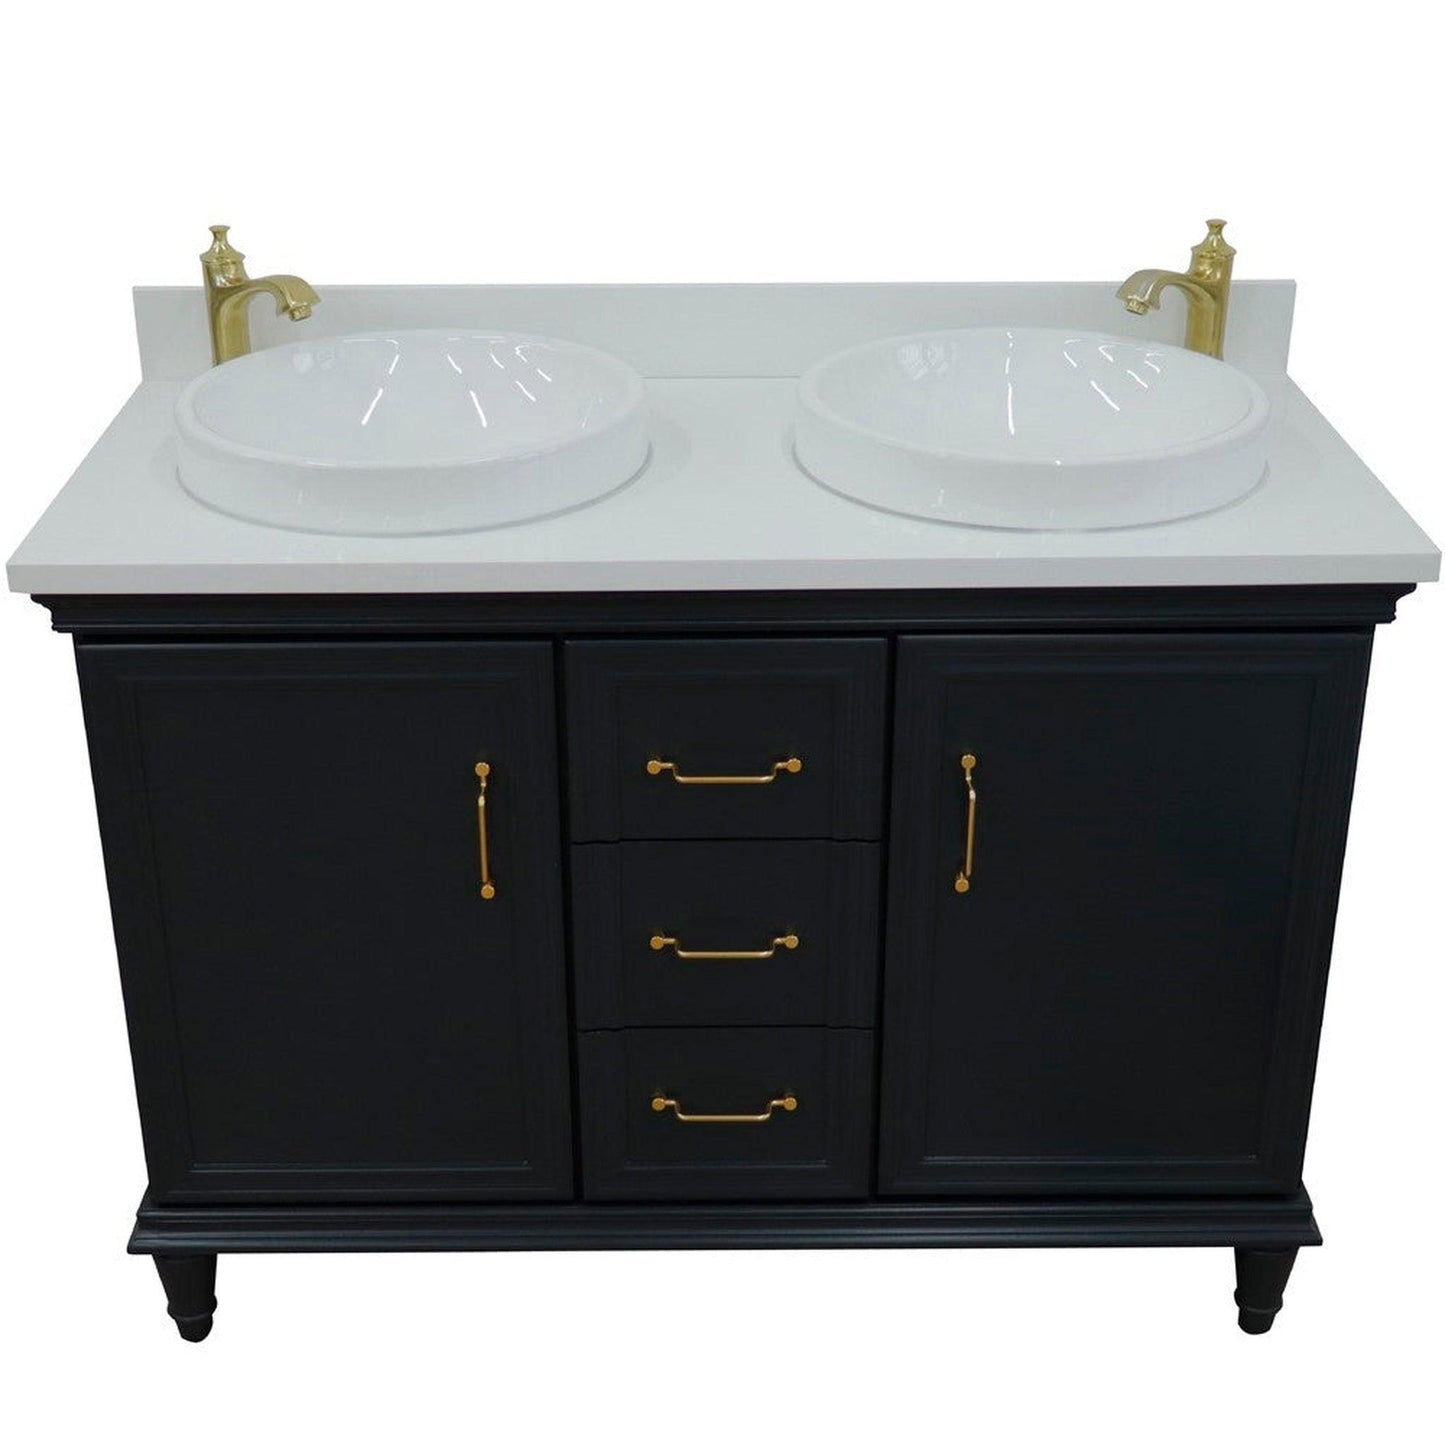 Bellaterra Home Forli 49" 2-Door 3-Drawer Dark Gray Freestanding Vanity Set With Ceramic Double Vessel Sink and White Quartz Top